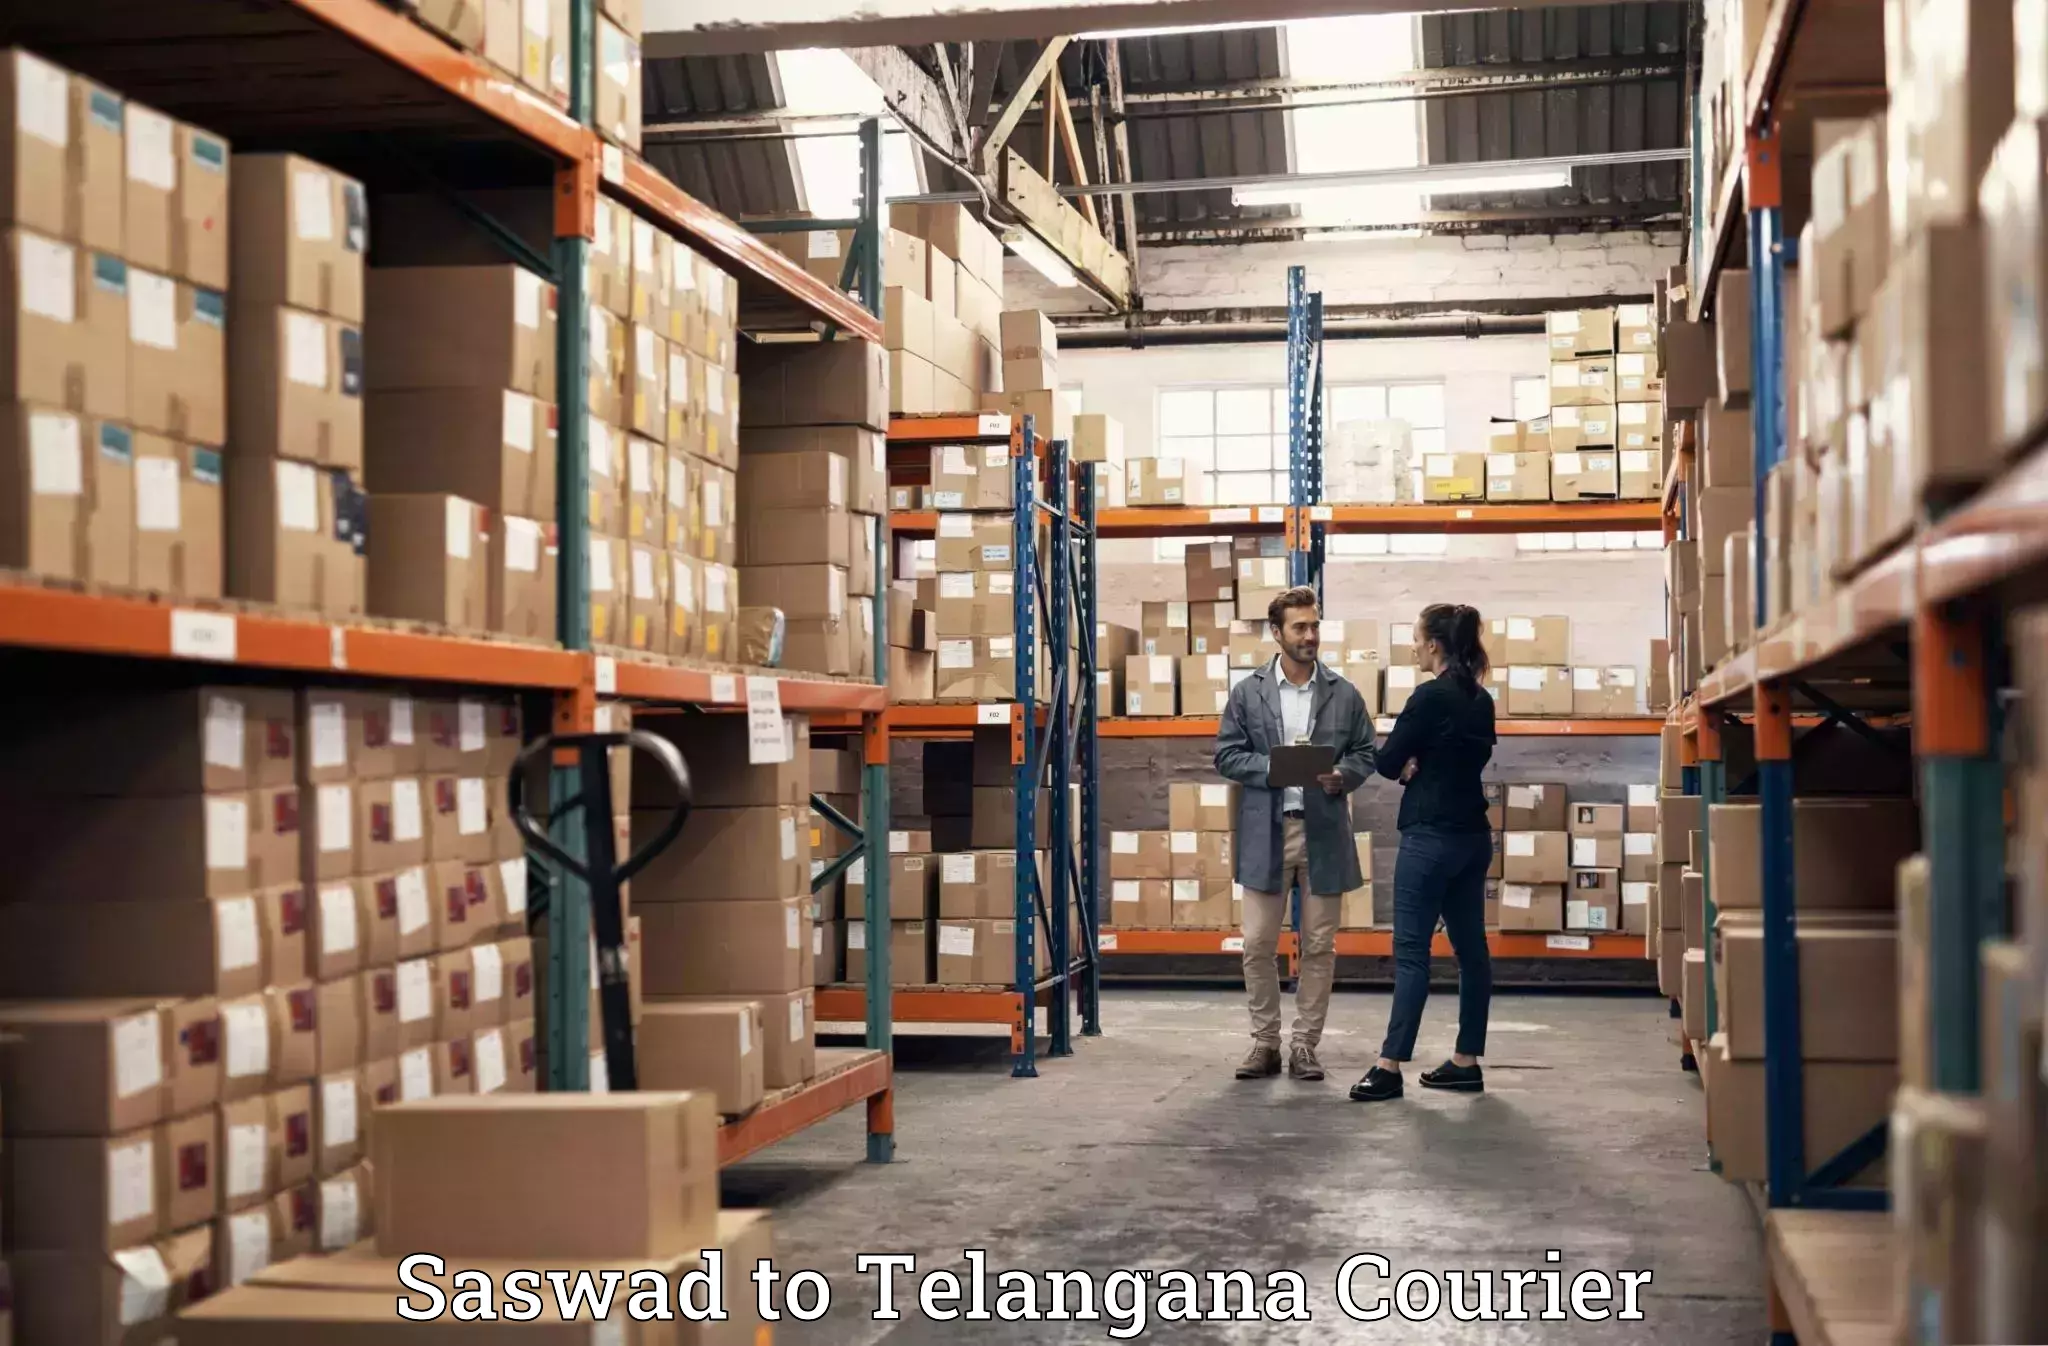 Baggage shipping experts Saswad to Mogulla Pally